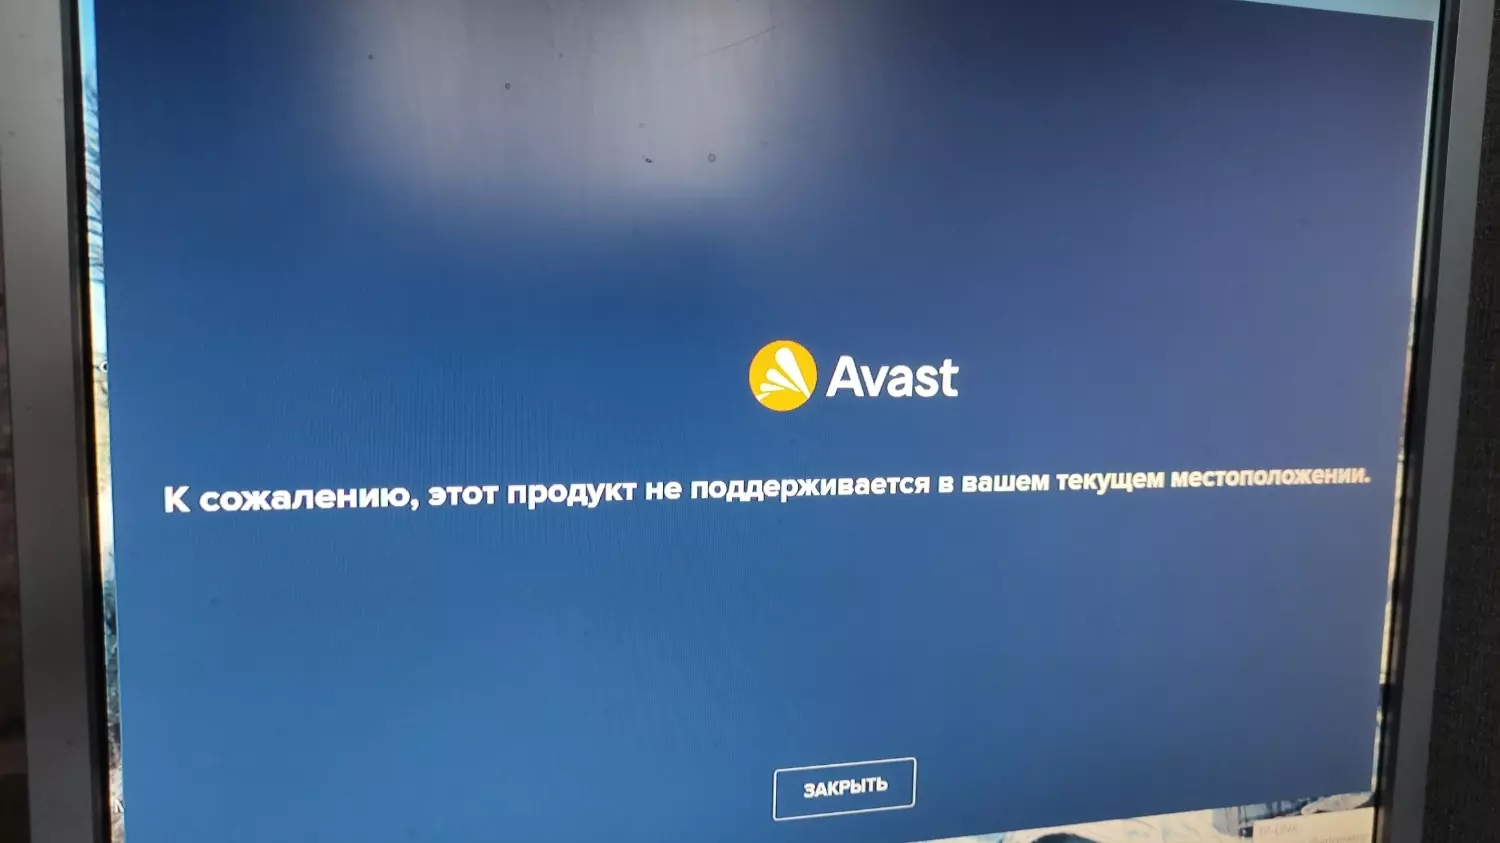 Вопрос о том, чем заменить Avast сегодня активно обсуждается в соцсетях.